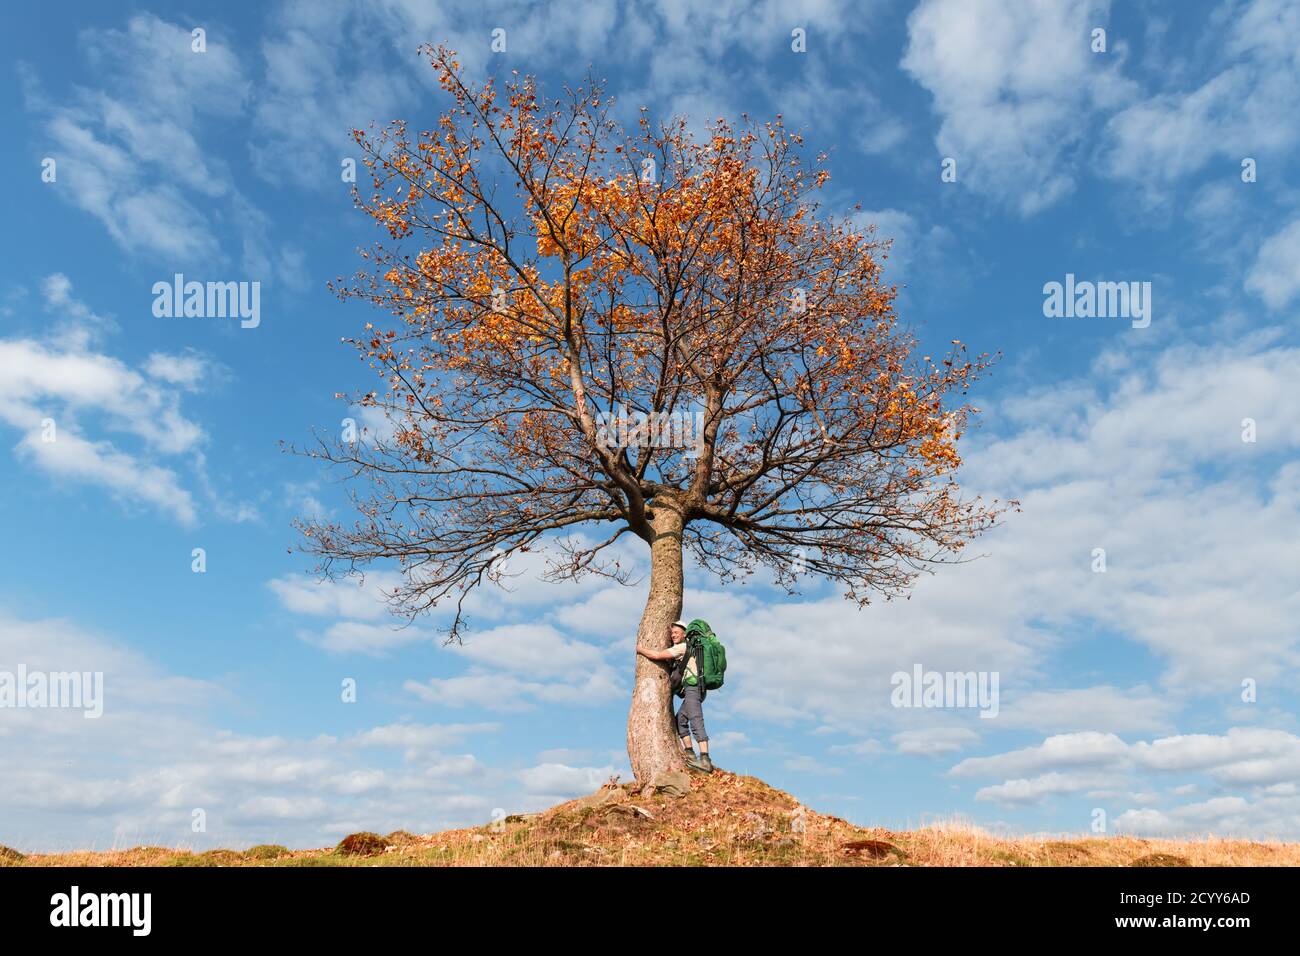 Turistico sotto il maestoso albero di arancio nella valle di montagna d'autunno. Scenografia d'autunno colorata e suggestiva con cielo blu nuvoloso. Fotografia di paesaggio Foto Stock